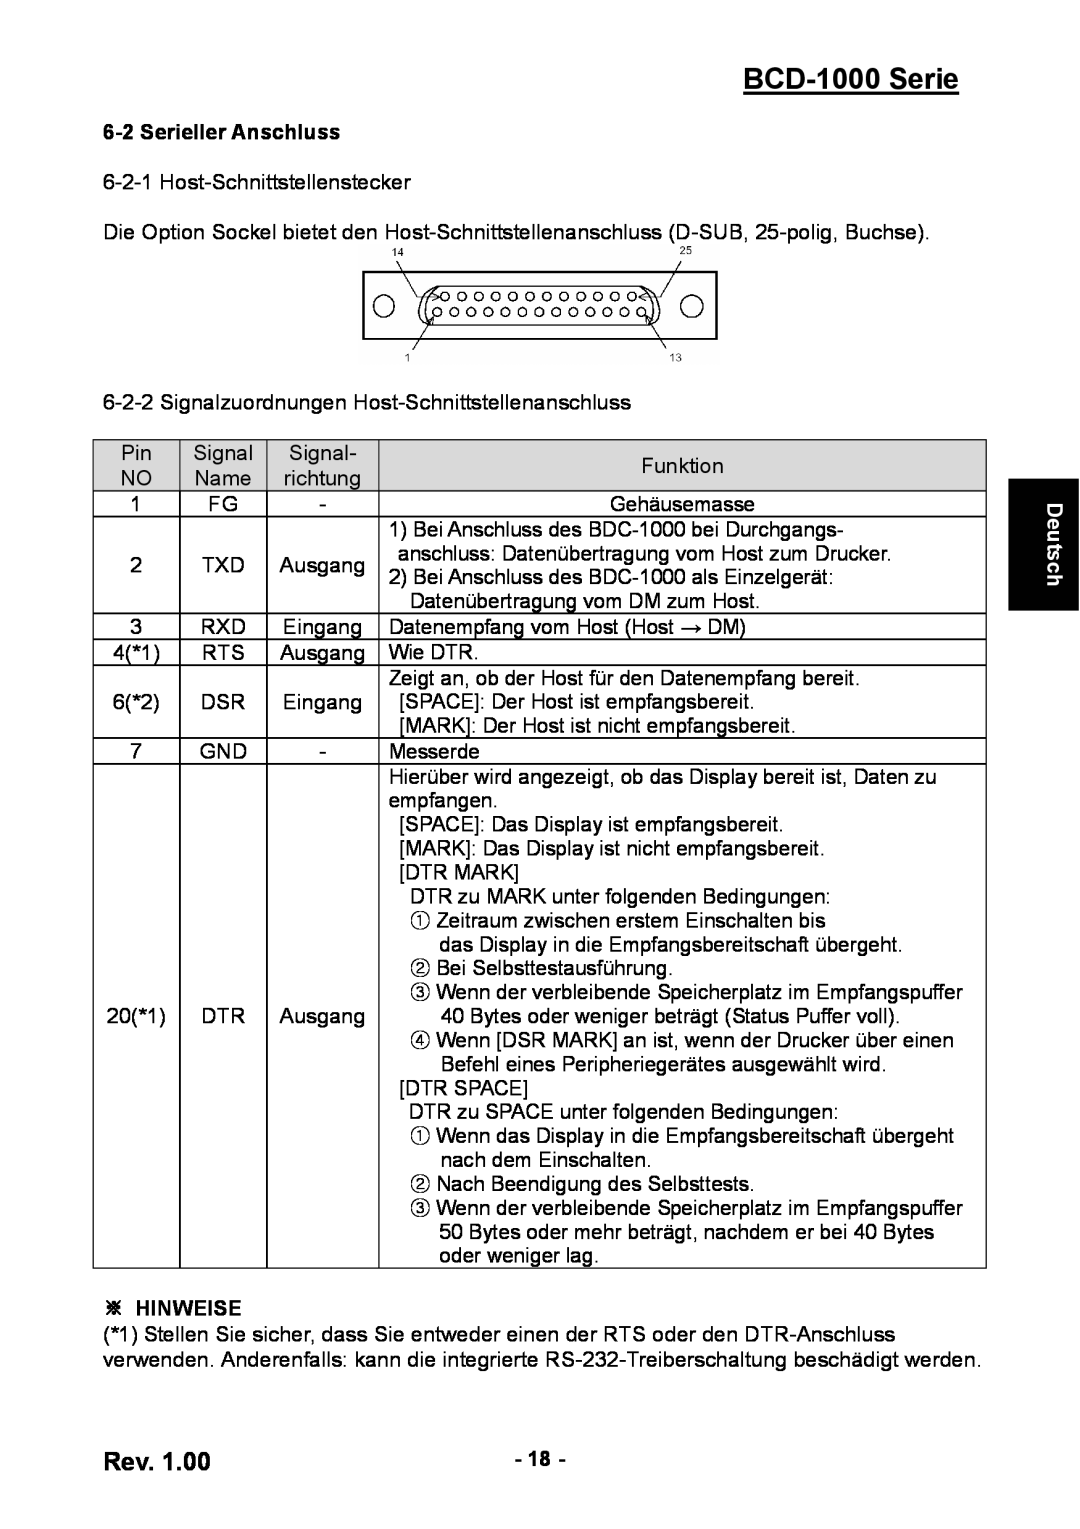 Samsung user manual Serieller Anschluss, BCD-1000 Serie, ※ Hinweise, Deutsch 